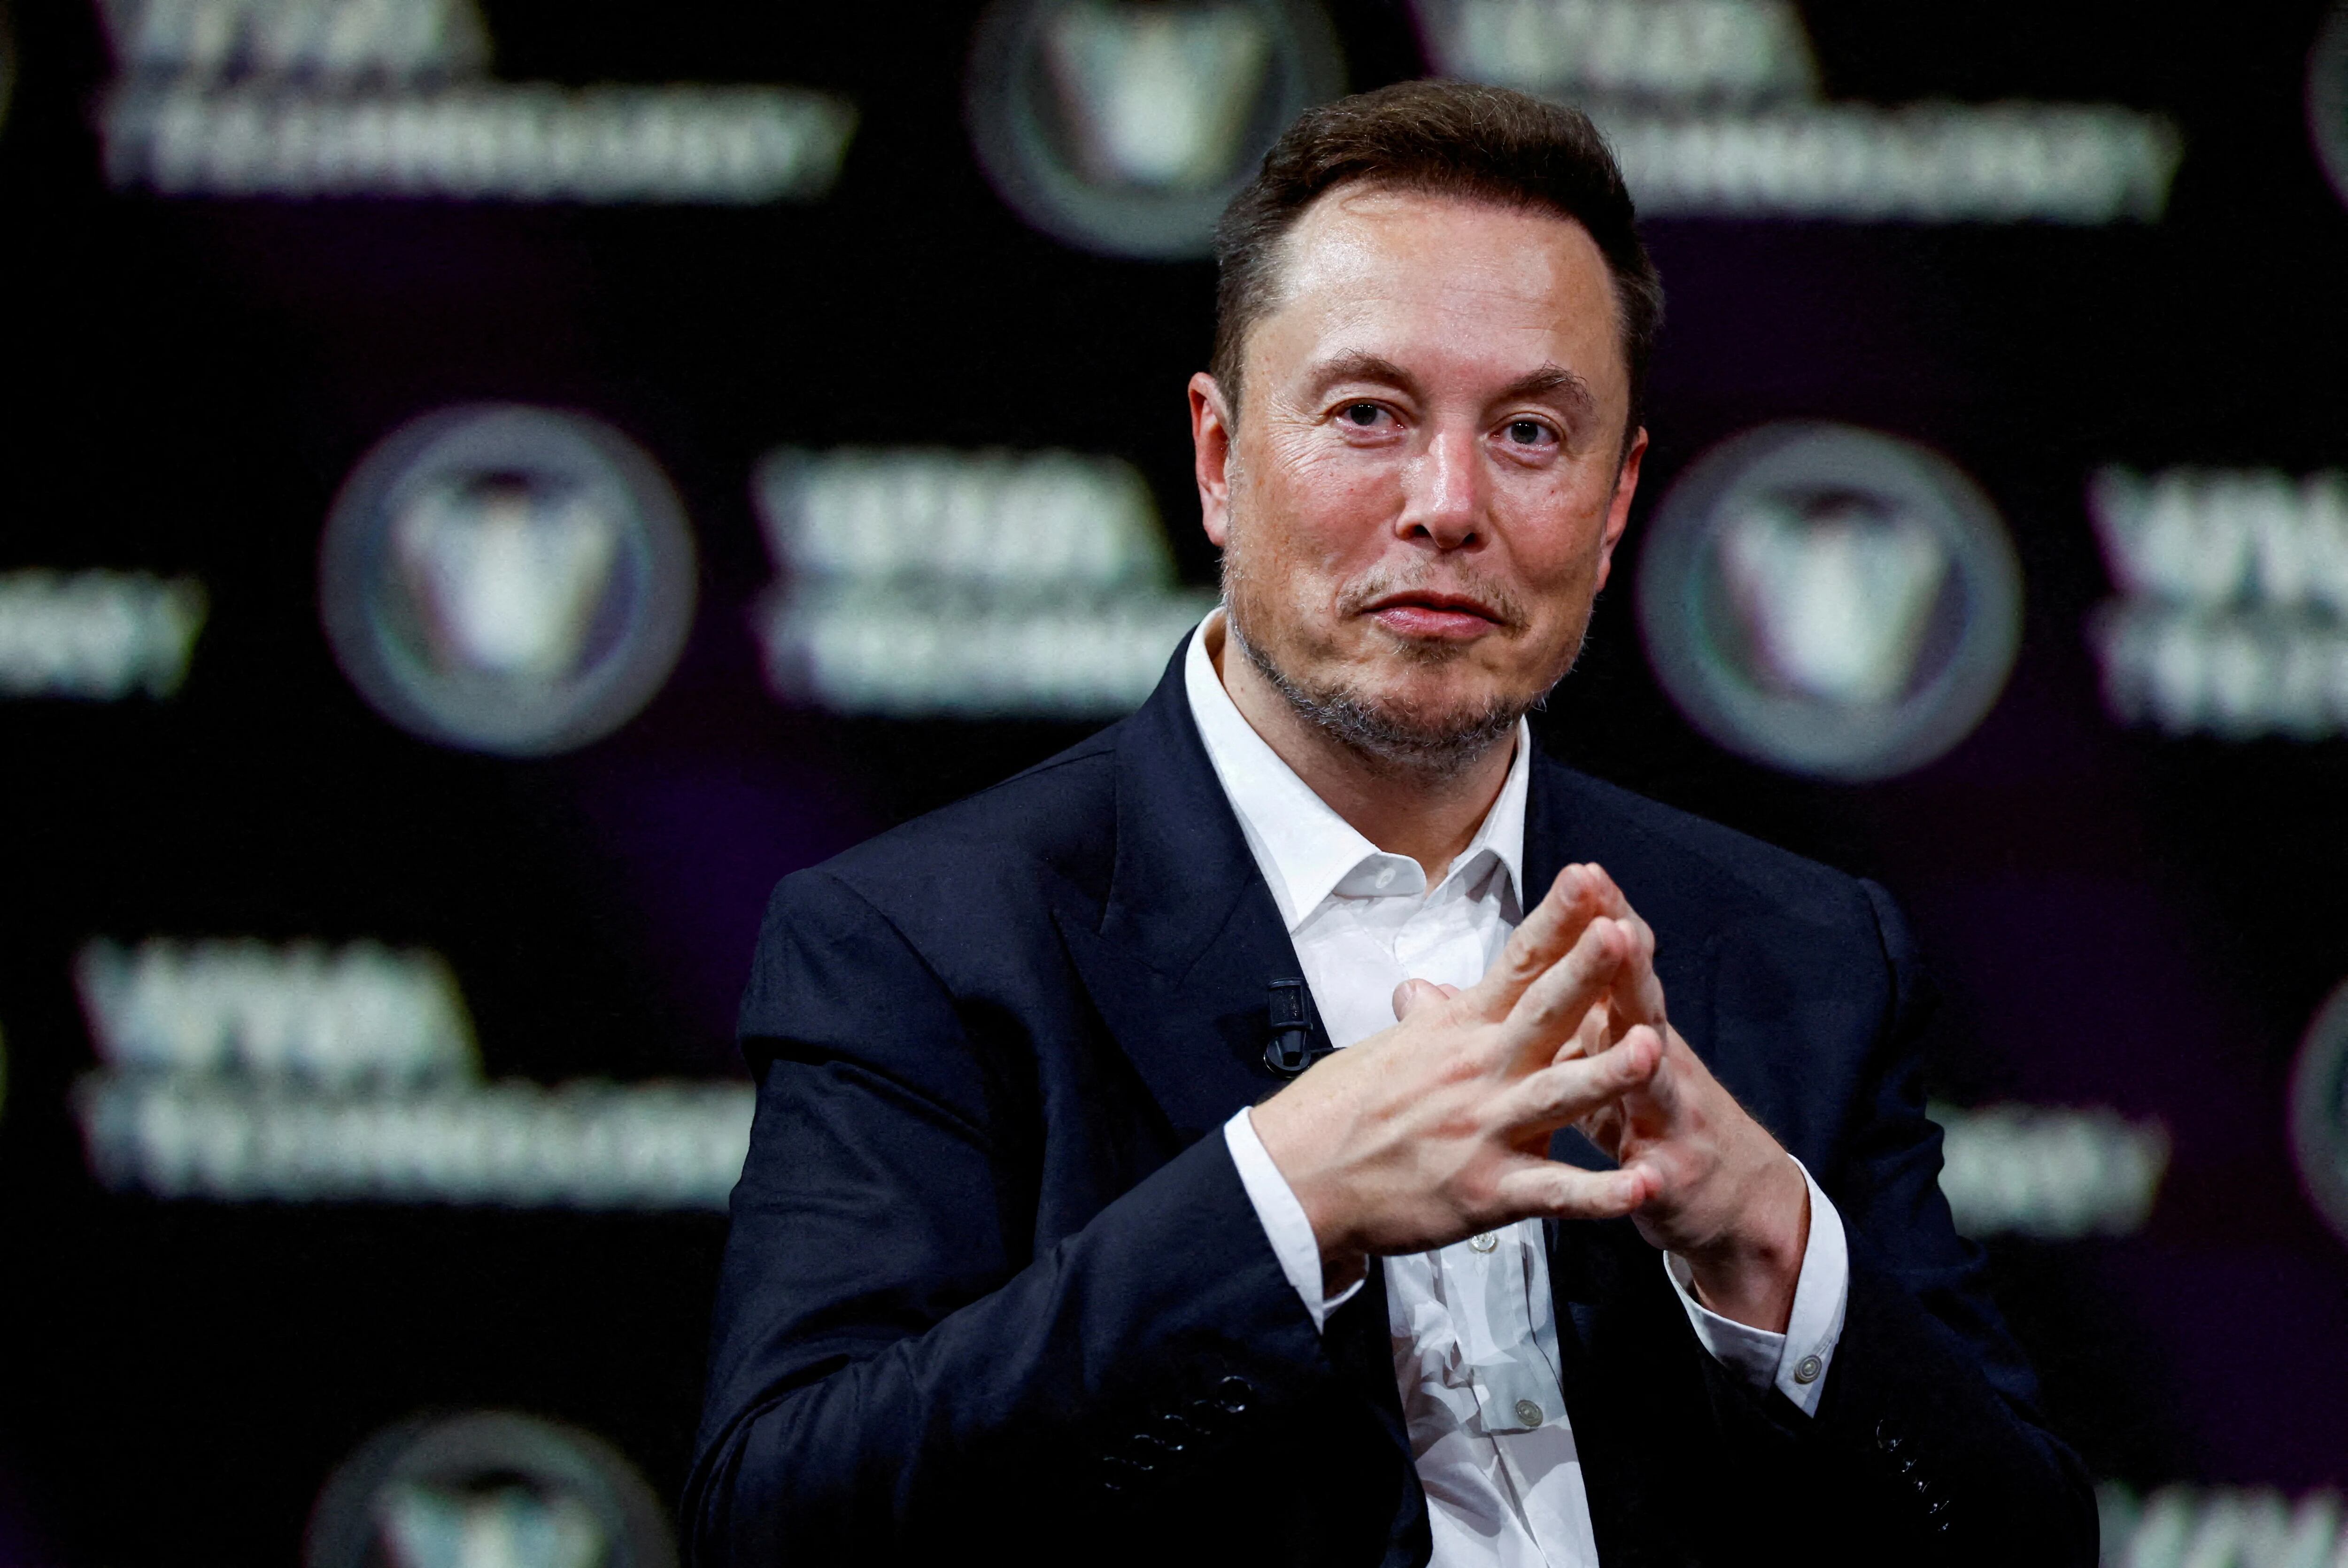 El fundador de Tesla y SpaceX participó en una charla virtual con dos legisladores de EEUU sobre los desafíos y oportunidades de esta nueva tecnología y  coincidieron en la necesidad de su regulación. (REUTERS)